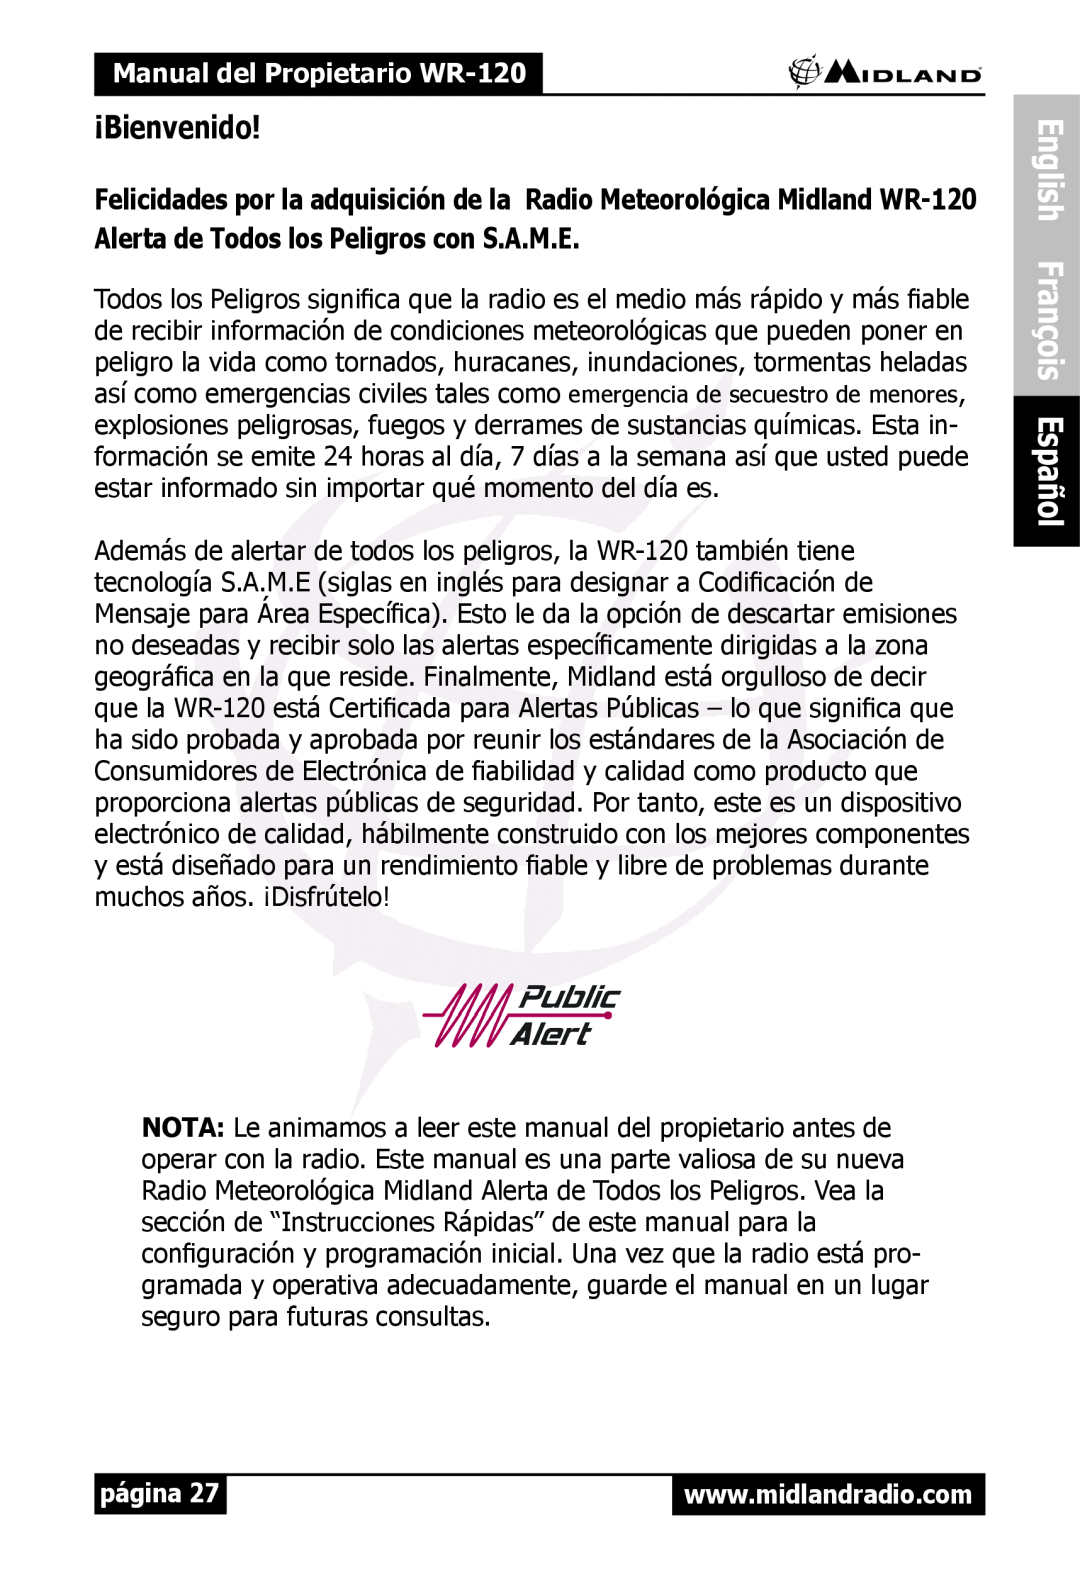 Midland Radio WR120 owner manual ¡Bienvenido, English François Español, Manual del Propietario WR-120, página 